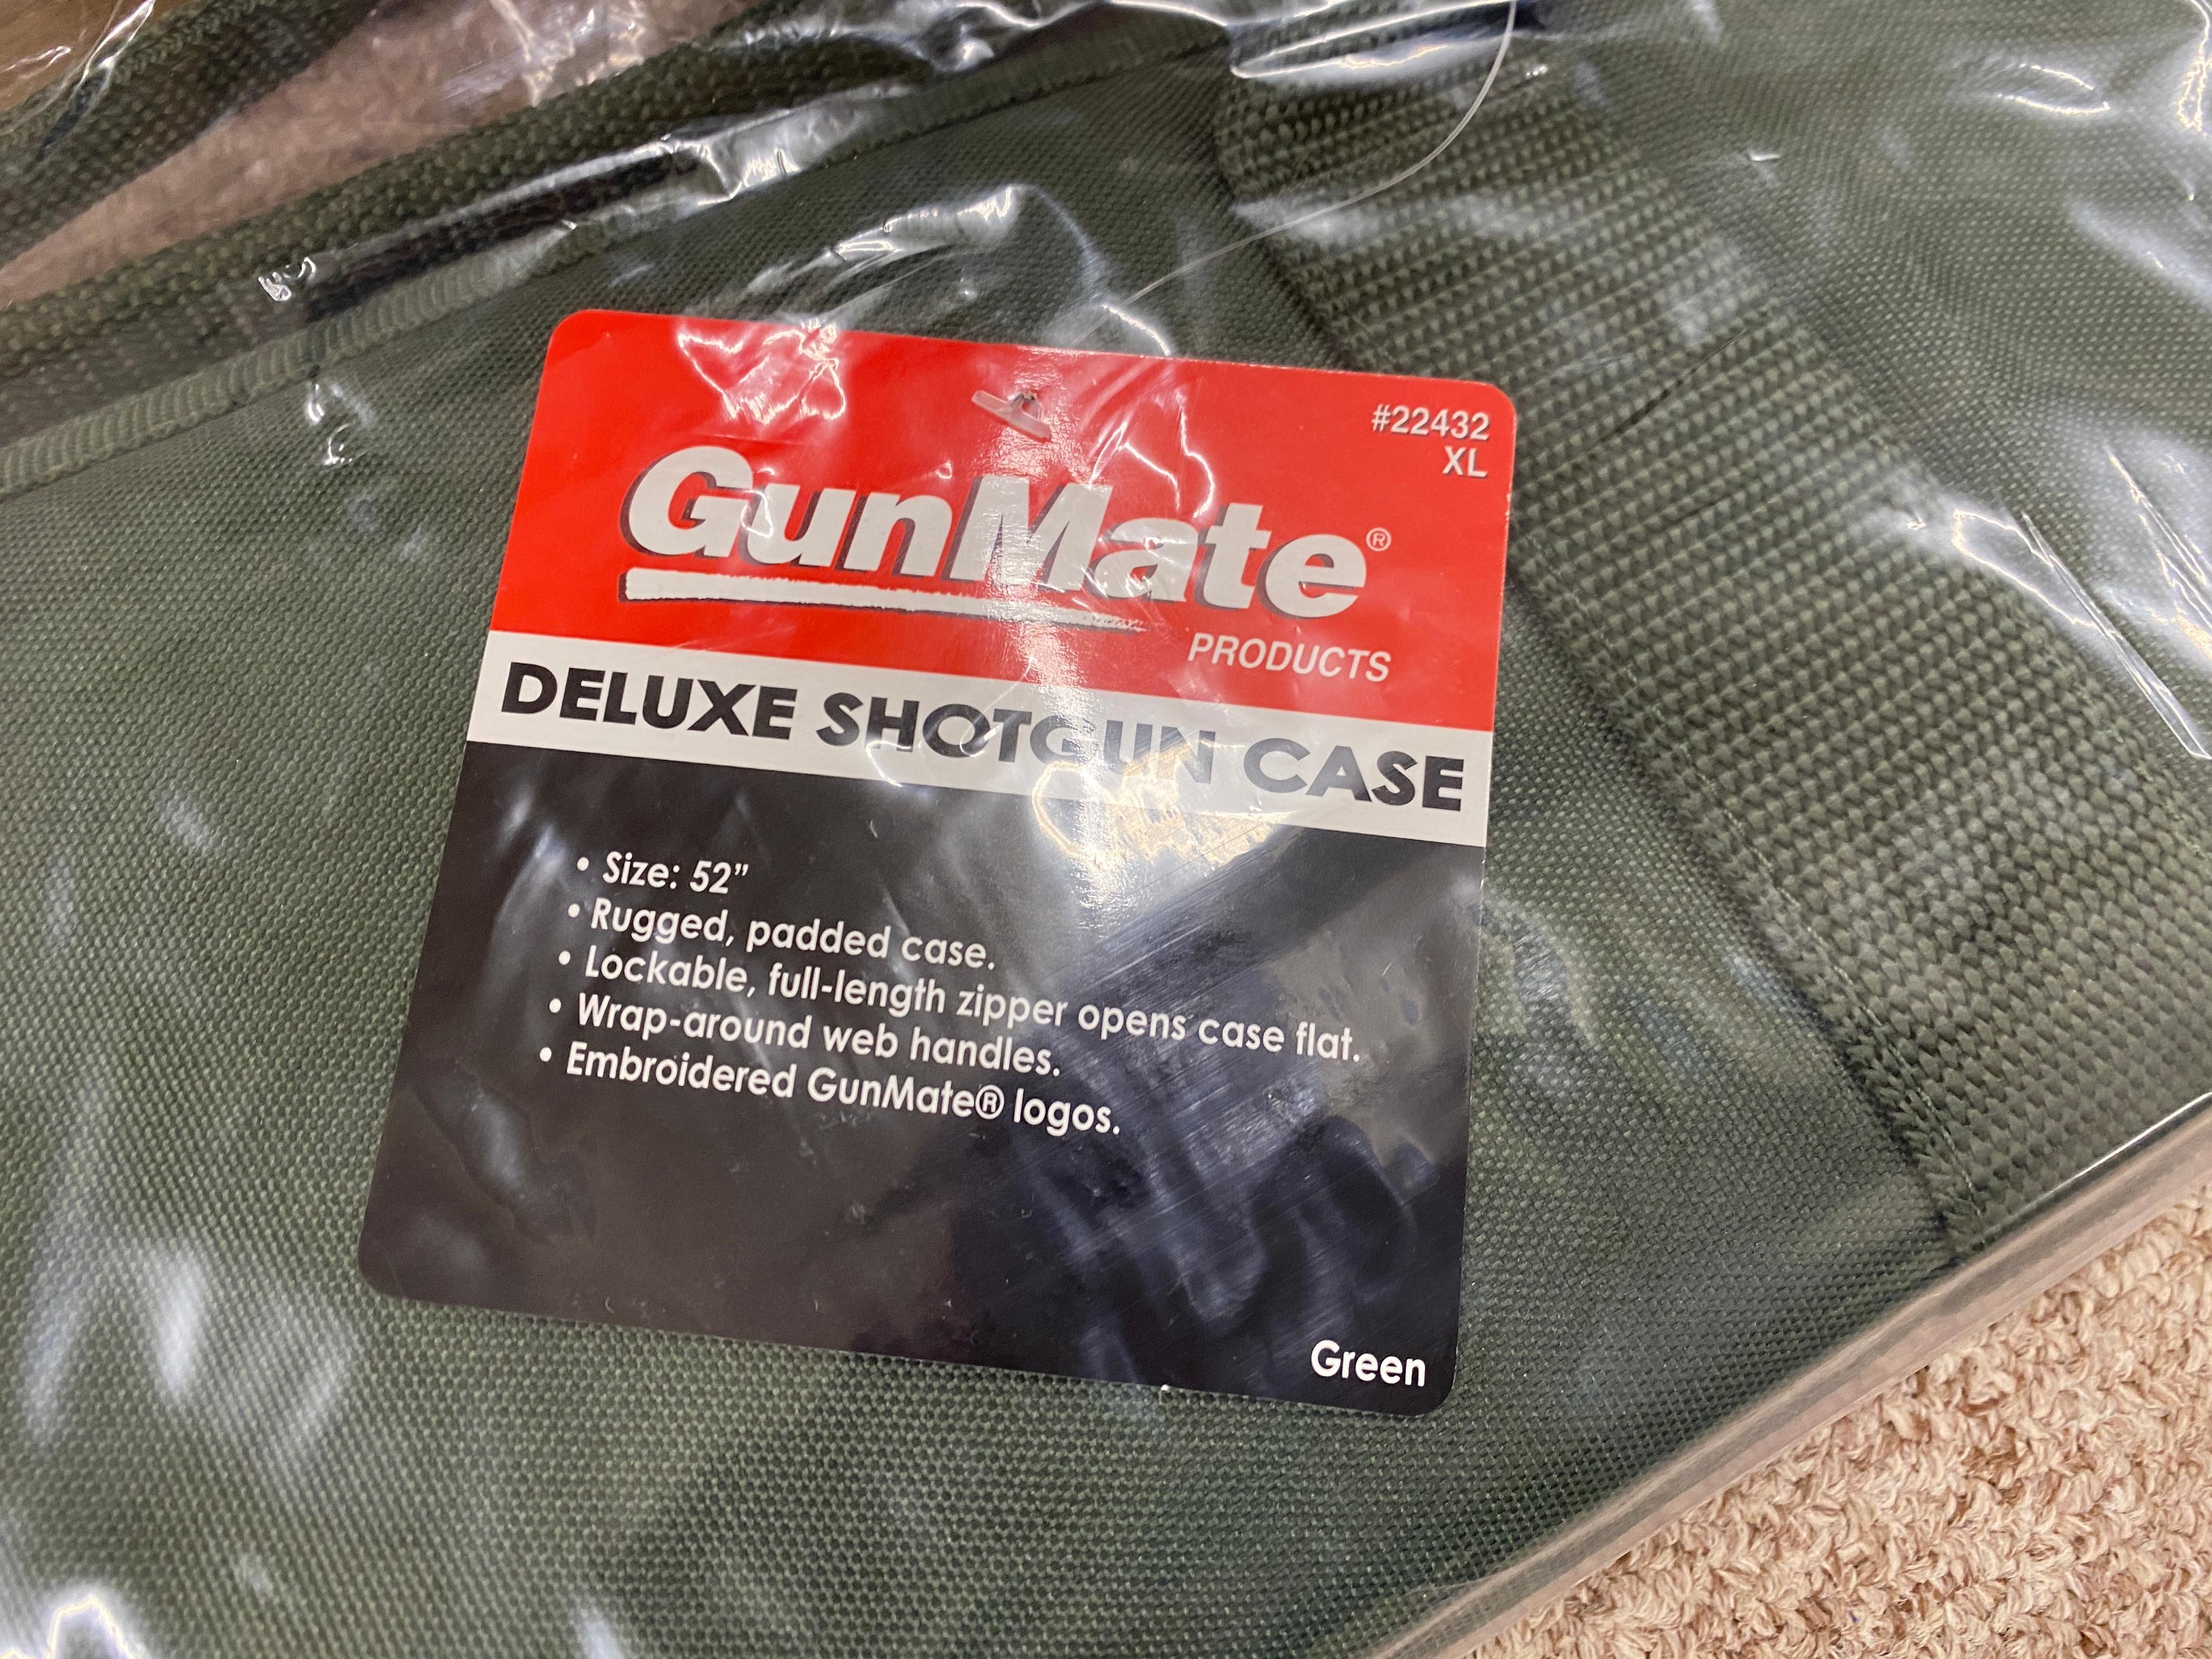 (10Pcs.) GUNMATE 52" DELUXE SHOTGUN SOFT CASE